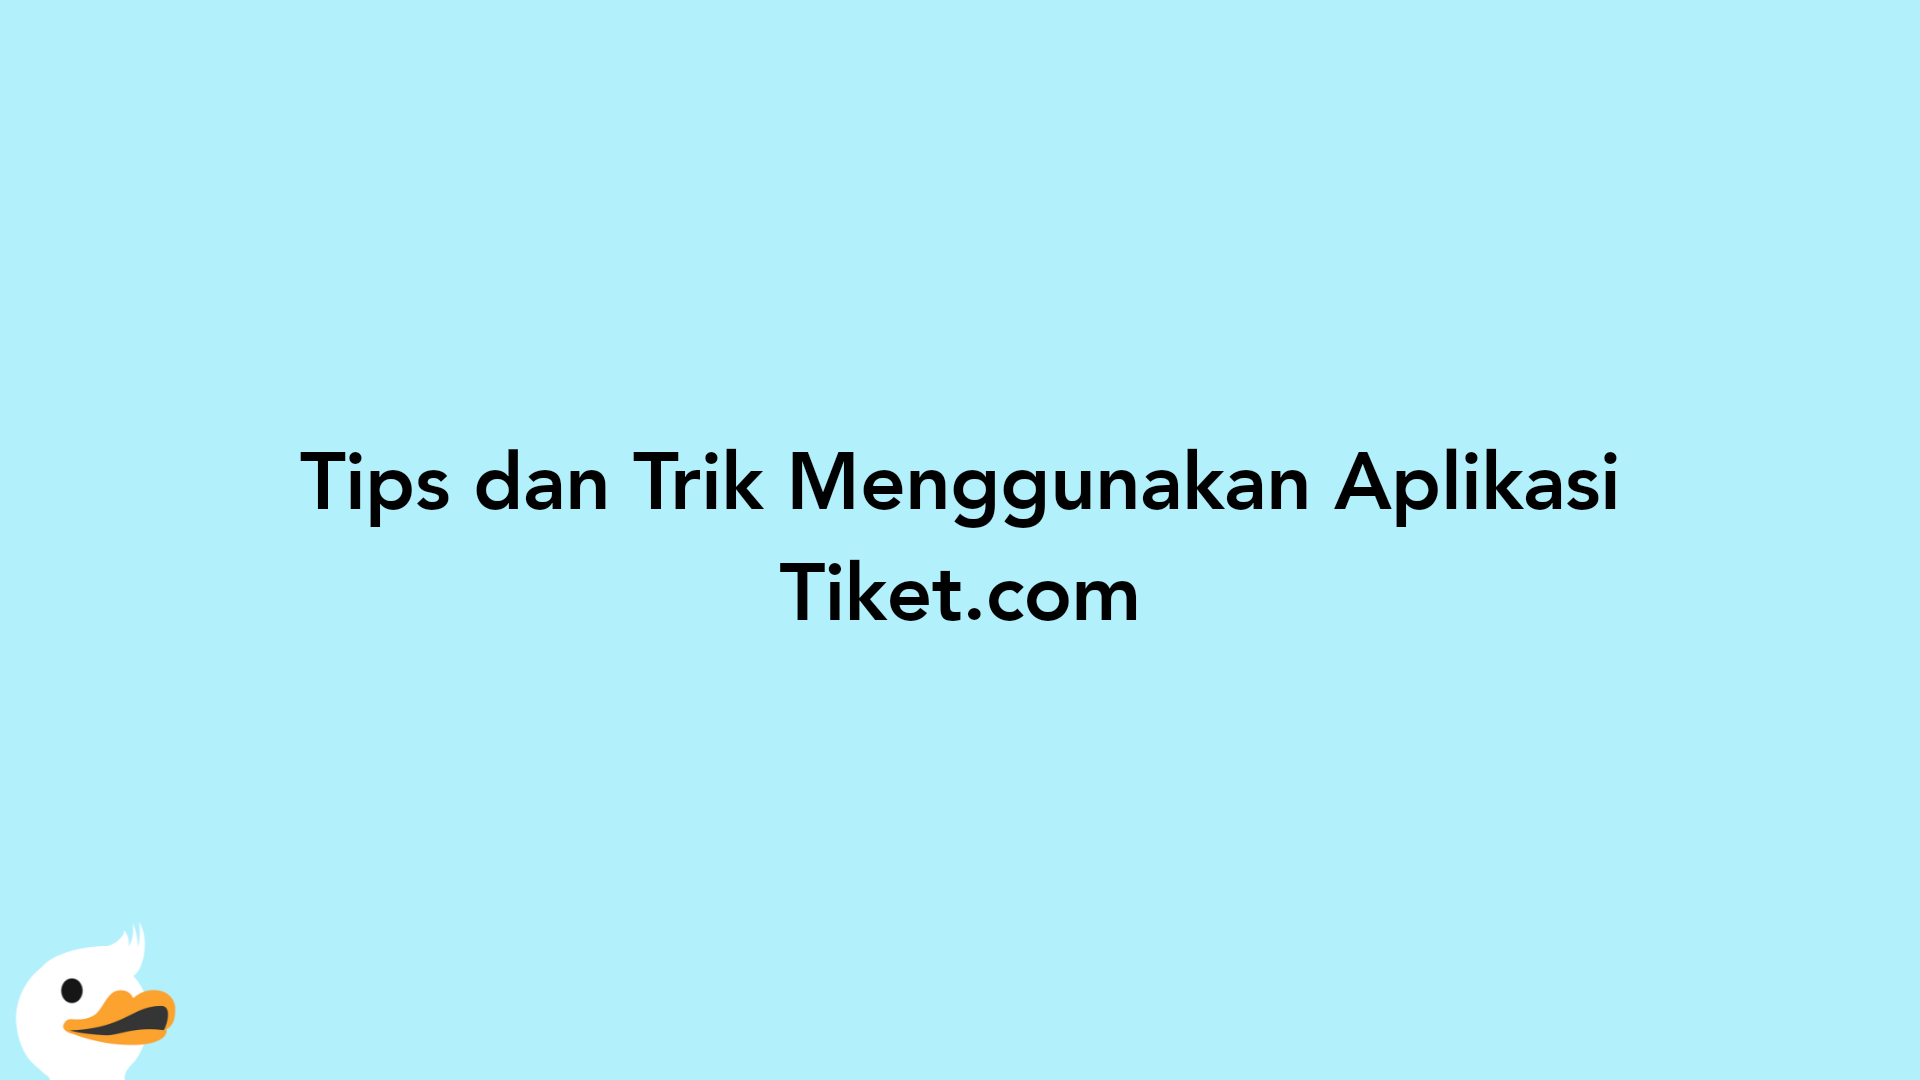 Tips dan Trik Menggunakan Aplikasi Tiket.com